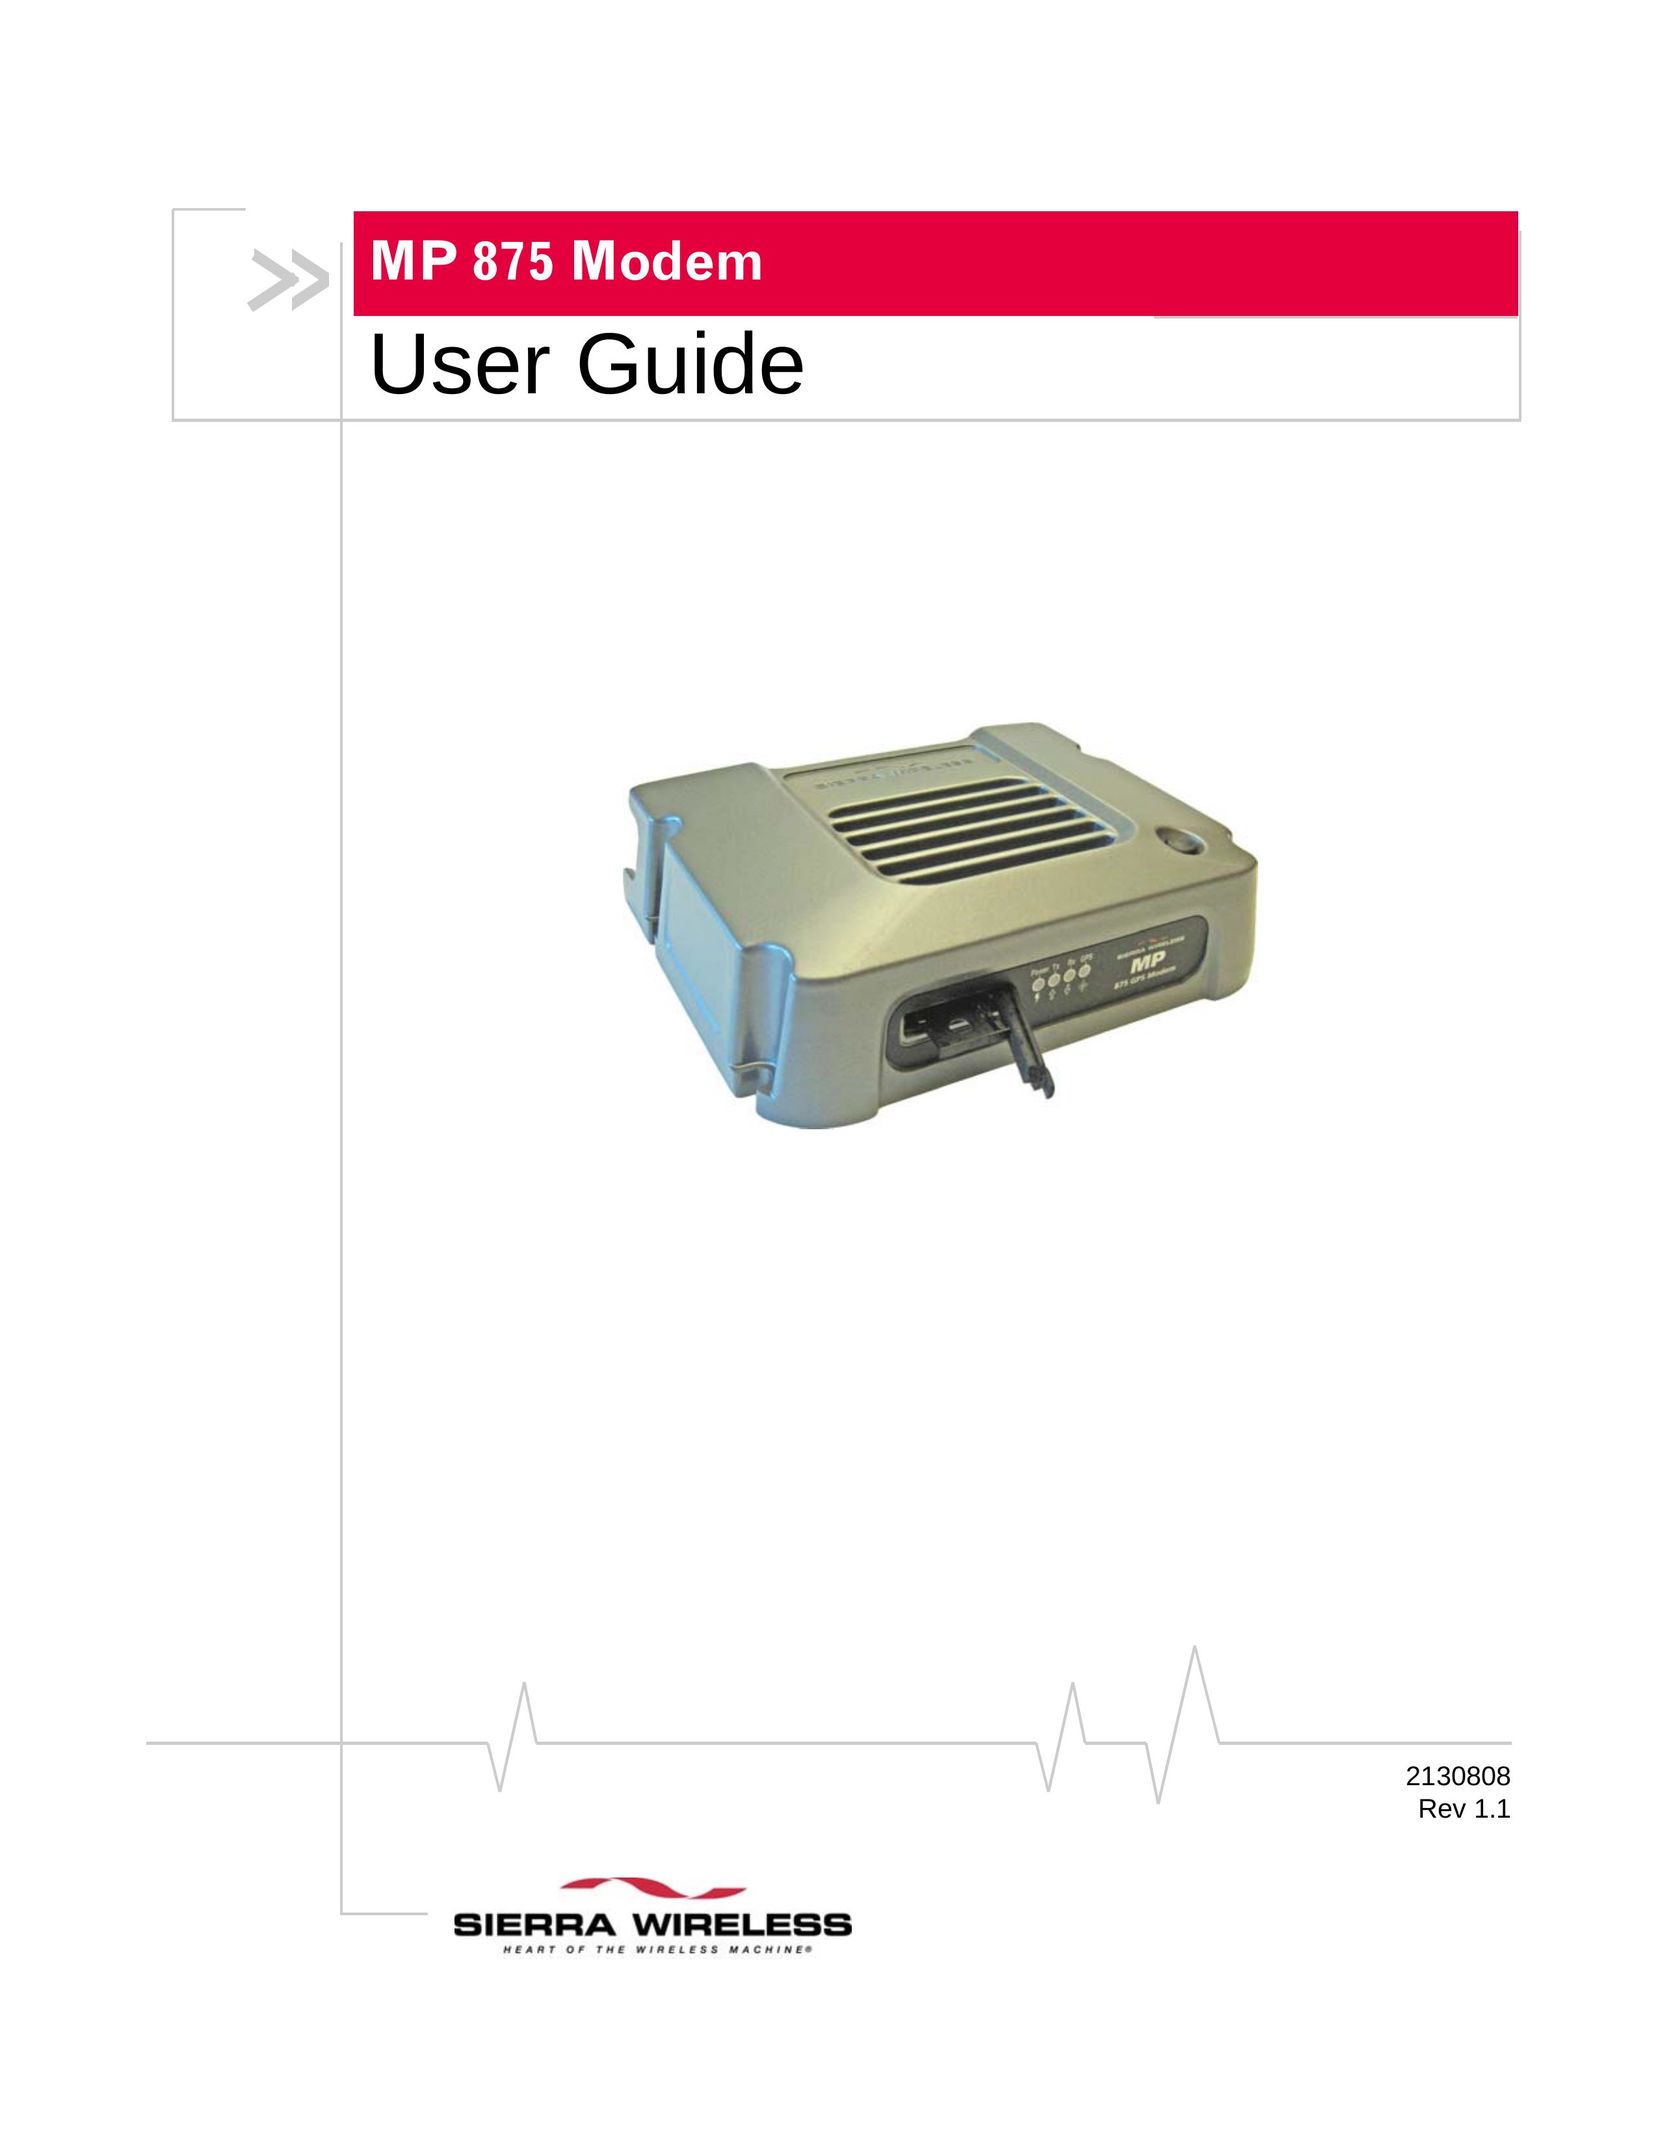 Sierra Wireless MP 875 Network Card User Manual